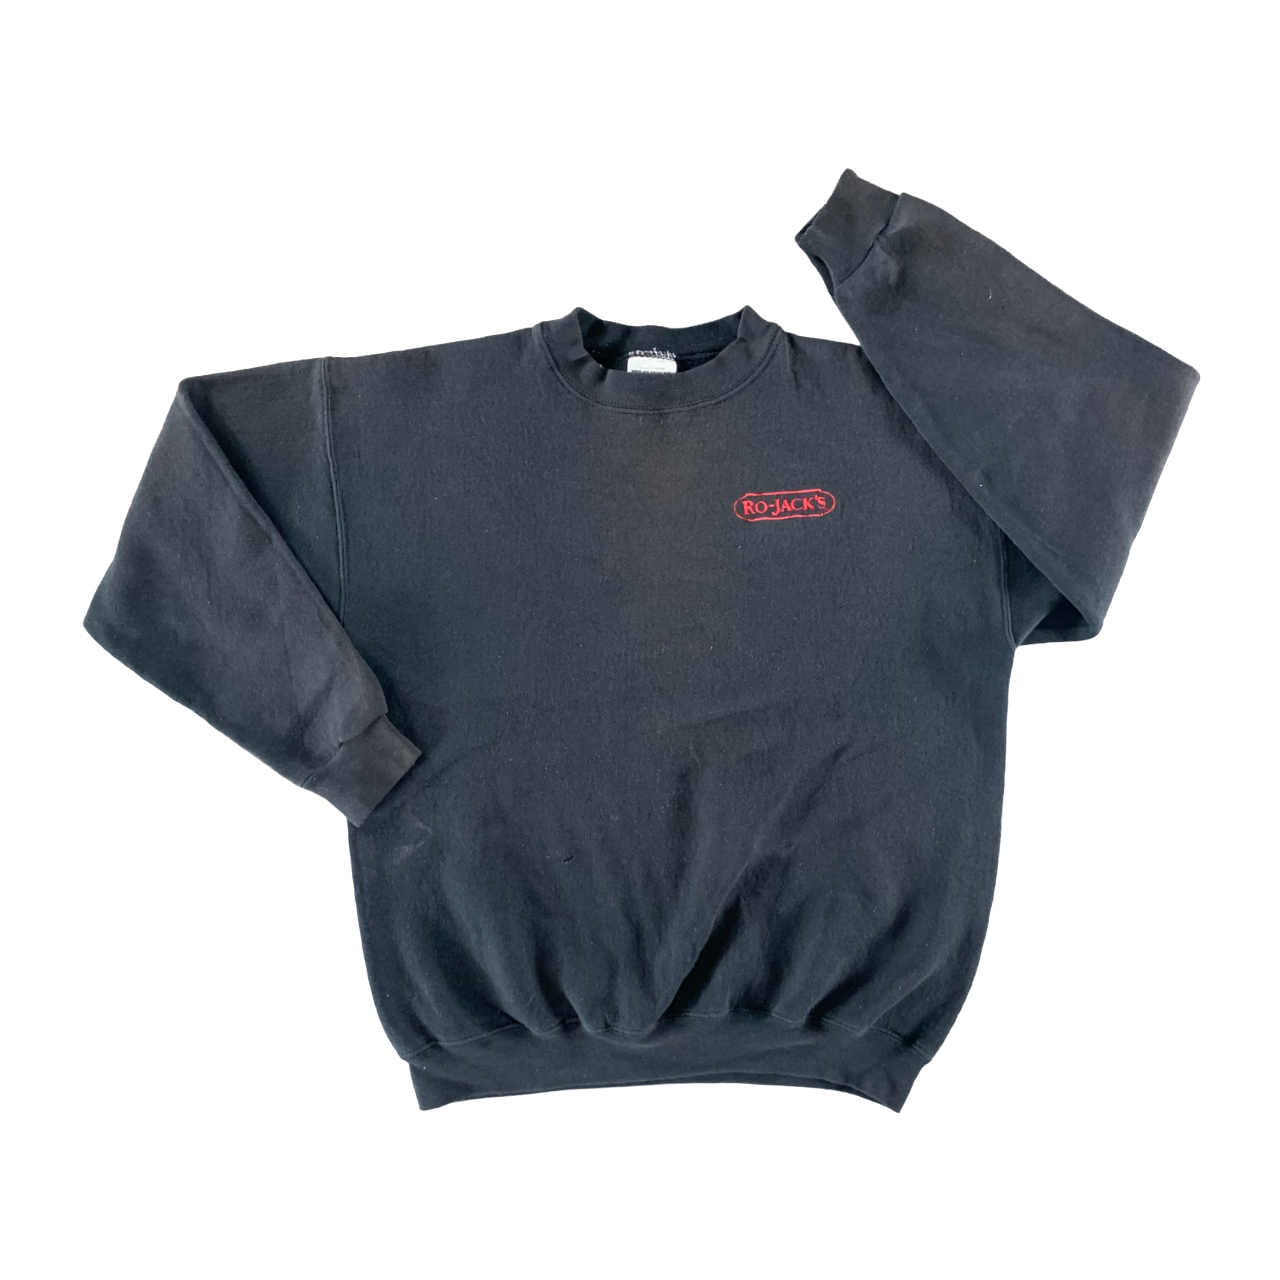 Vintage 1990s Ro-Jacks Sweatshirt size Medium